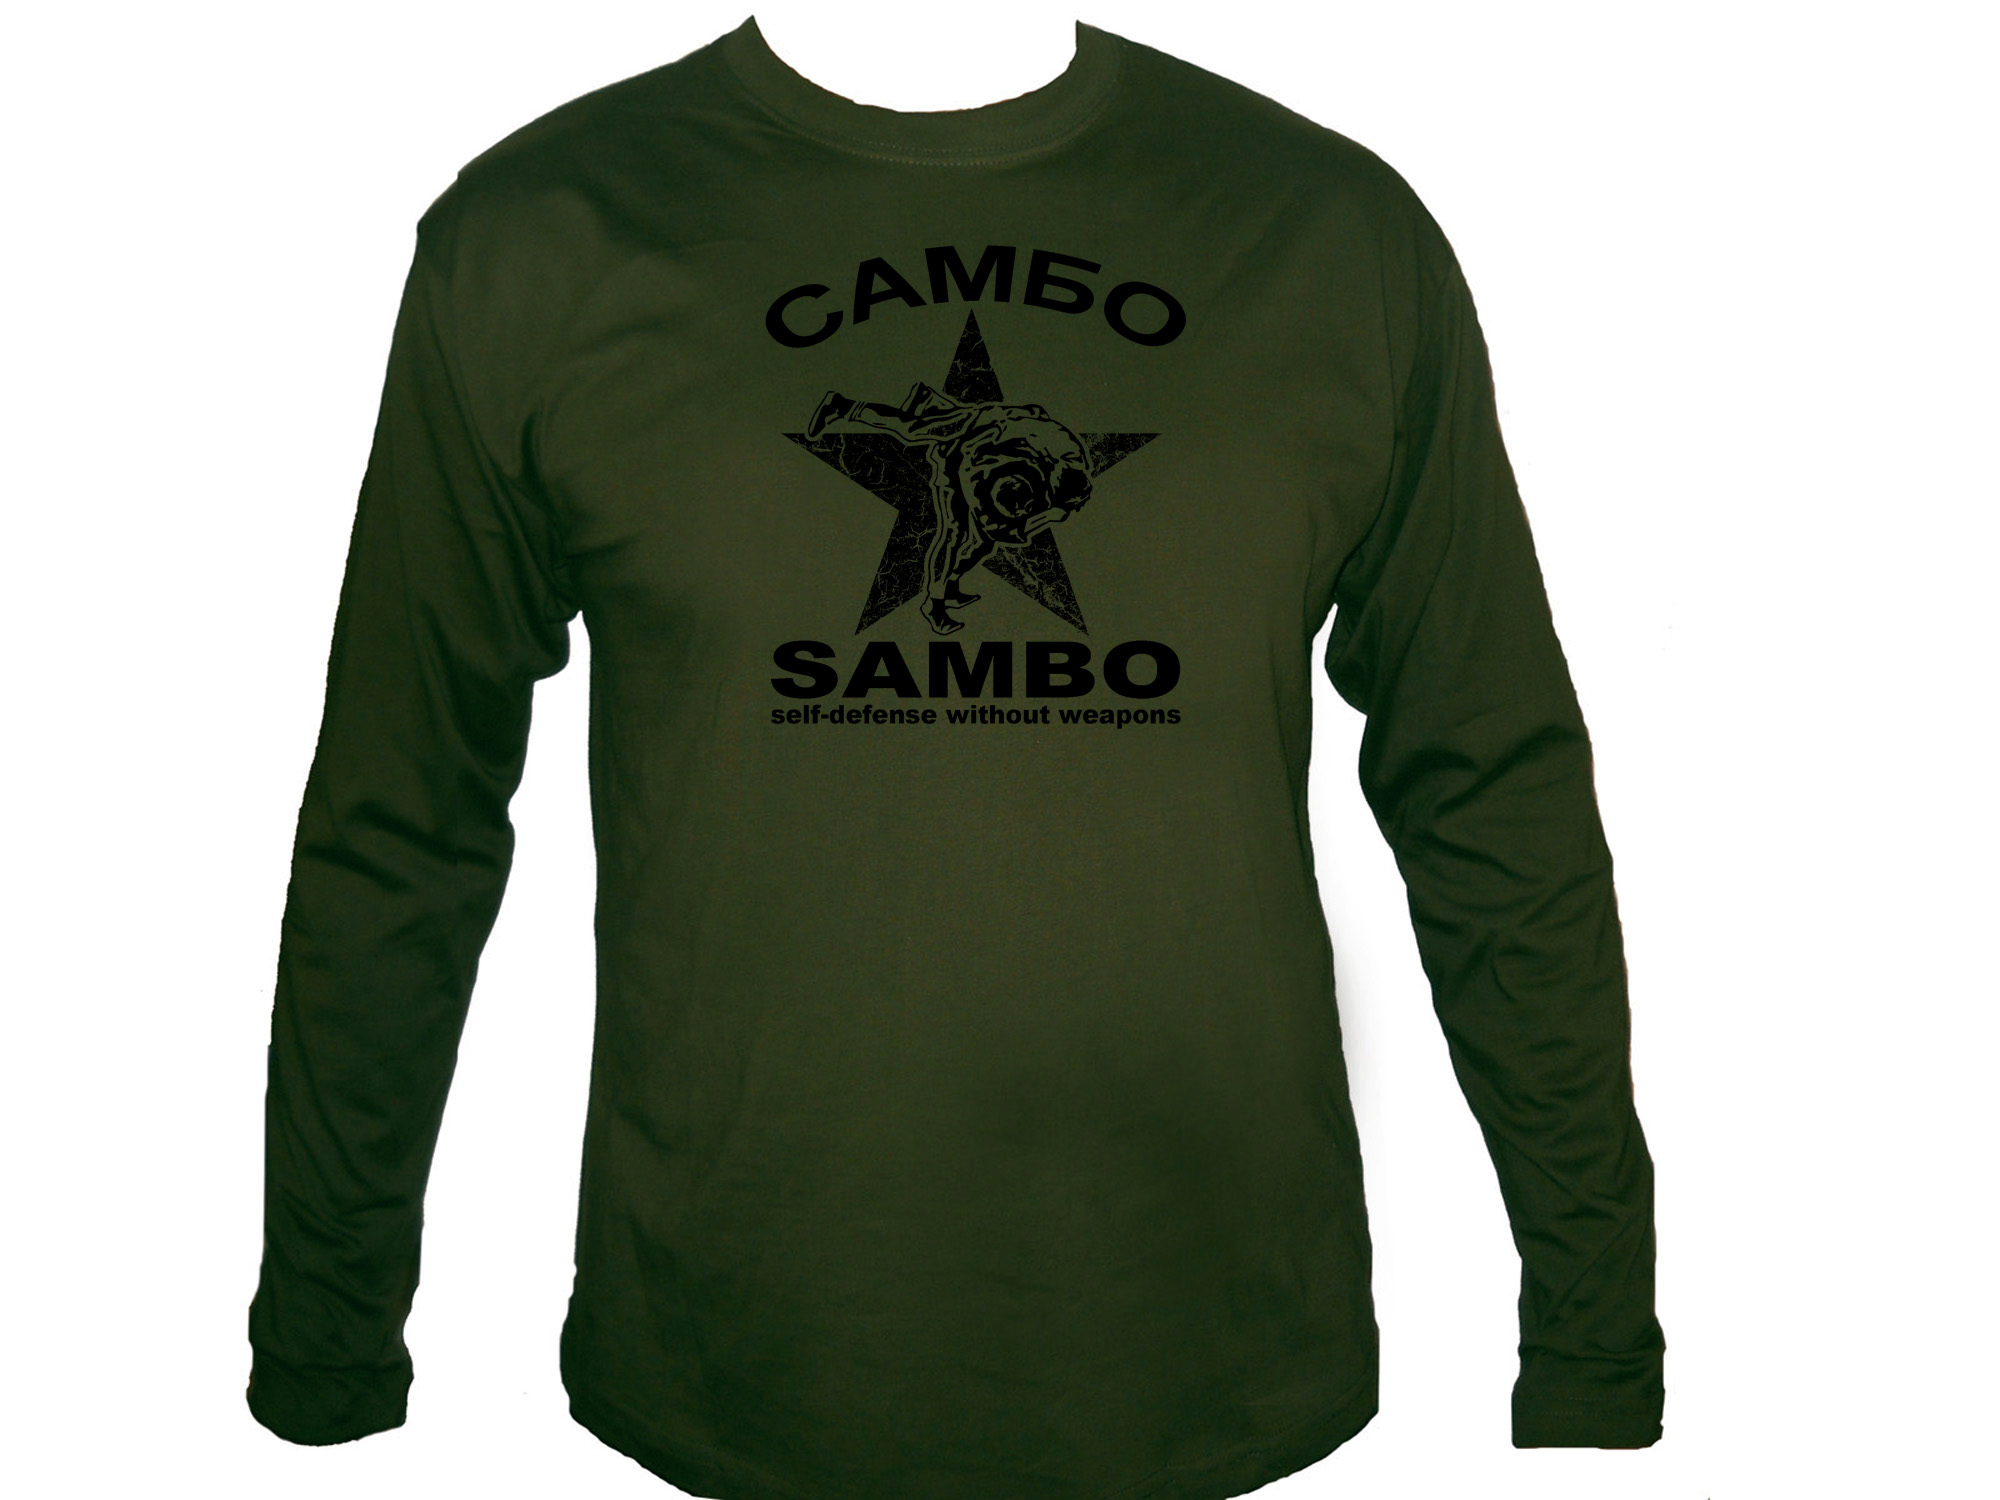 Sambo Russian martial arts sleeved olive green t-shirt